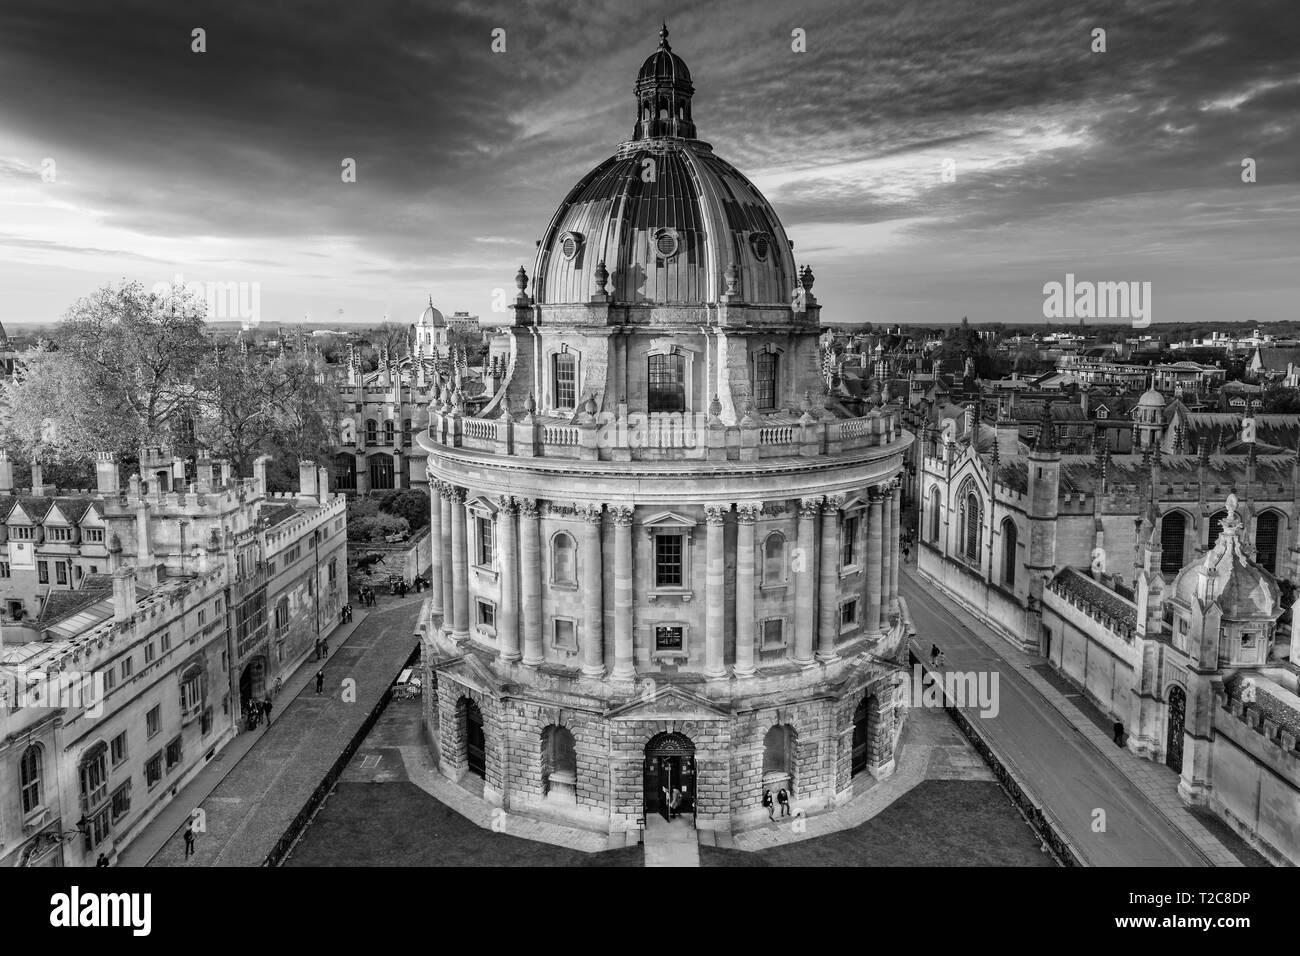 Schwarz-weiß Bild von Radcliffe Camera in Oxford. Stockfoto